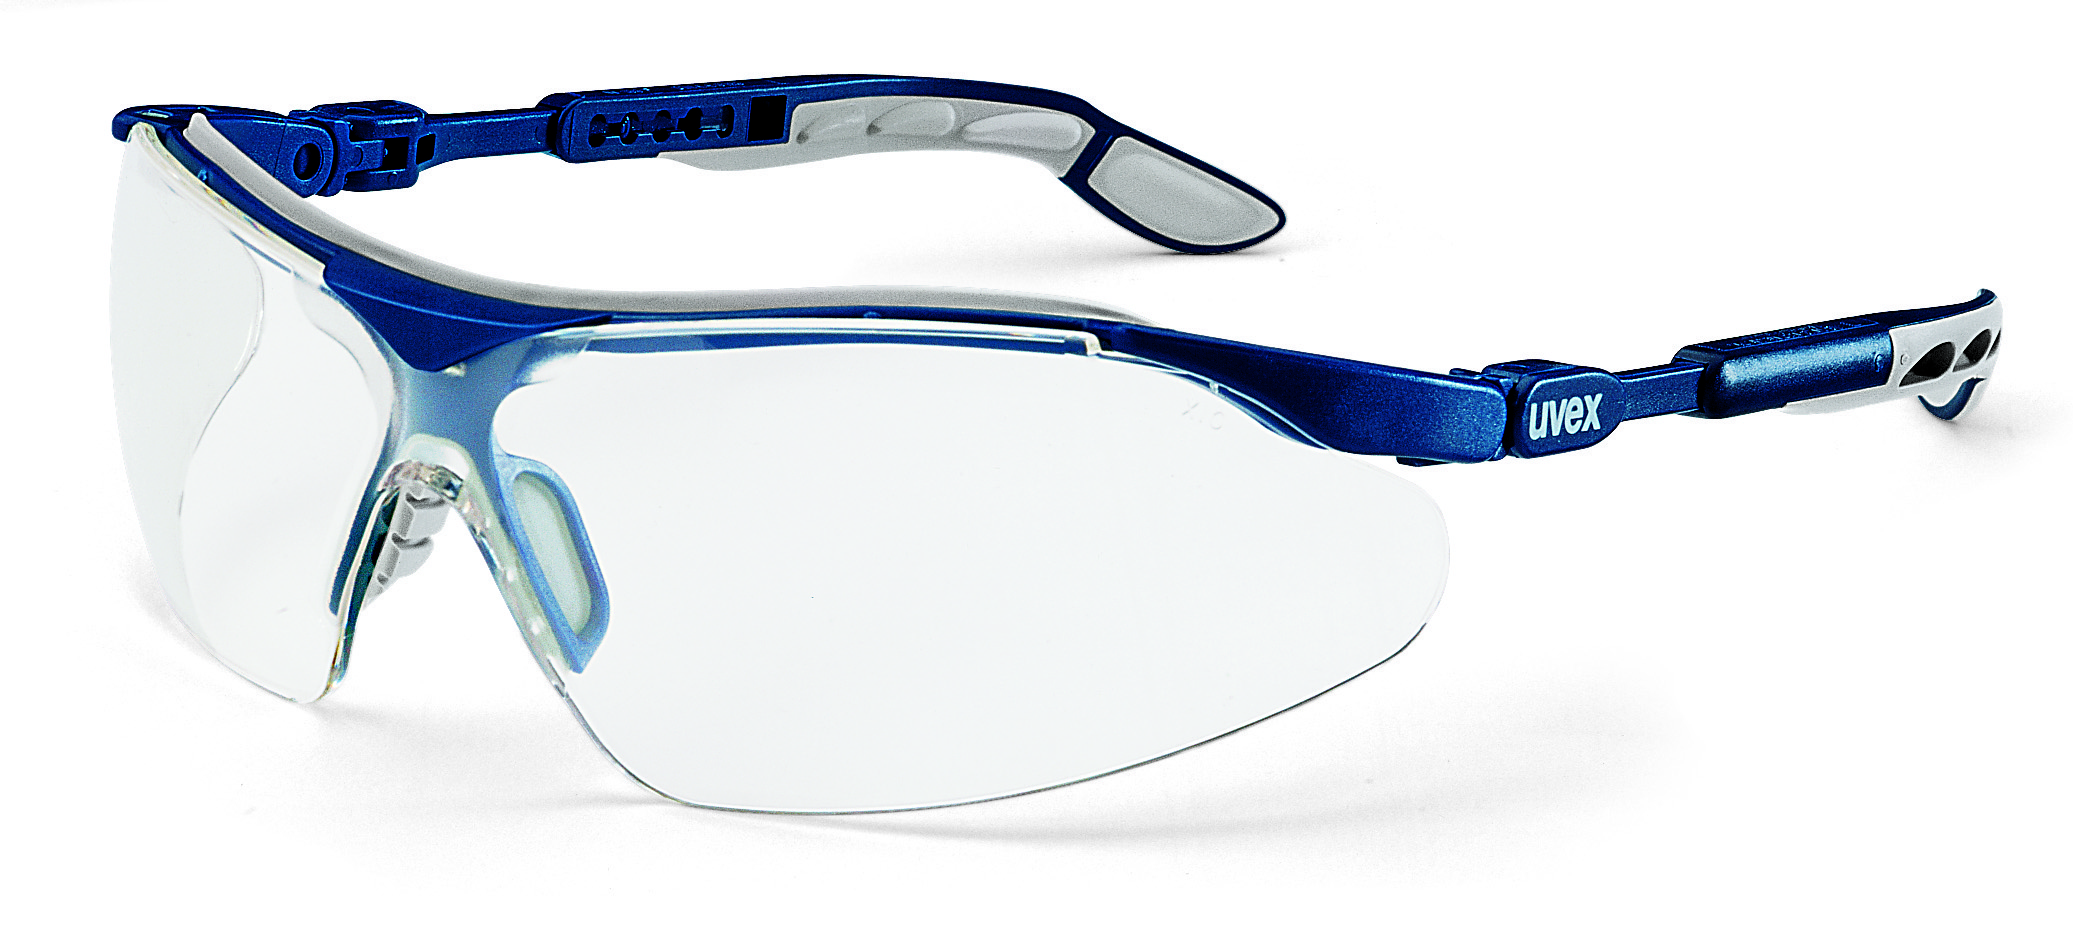 Brýle uvex i-vo Kód produktu: 9160185, Provedení zorníku: PC čirý/UV 2-1,2; SV plus, rám. modrý/šedý